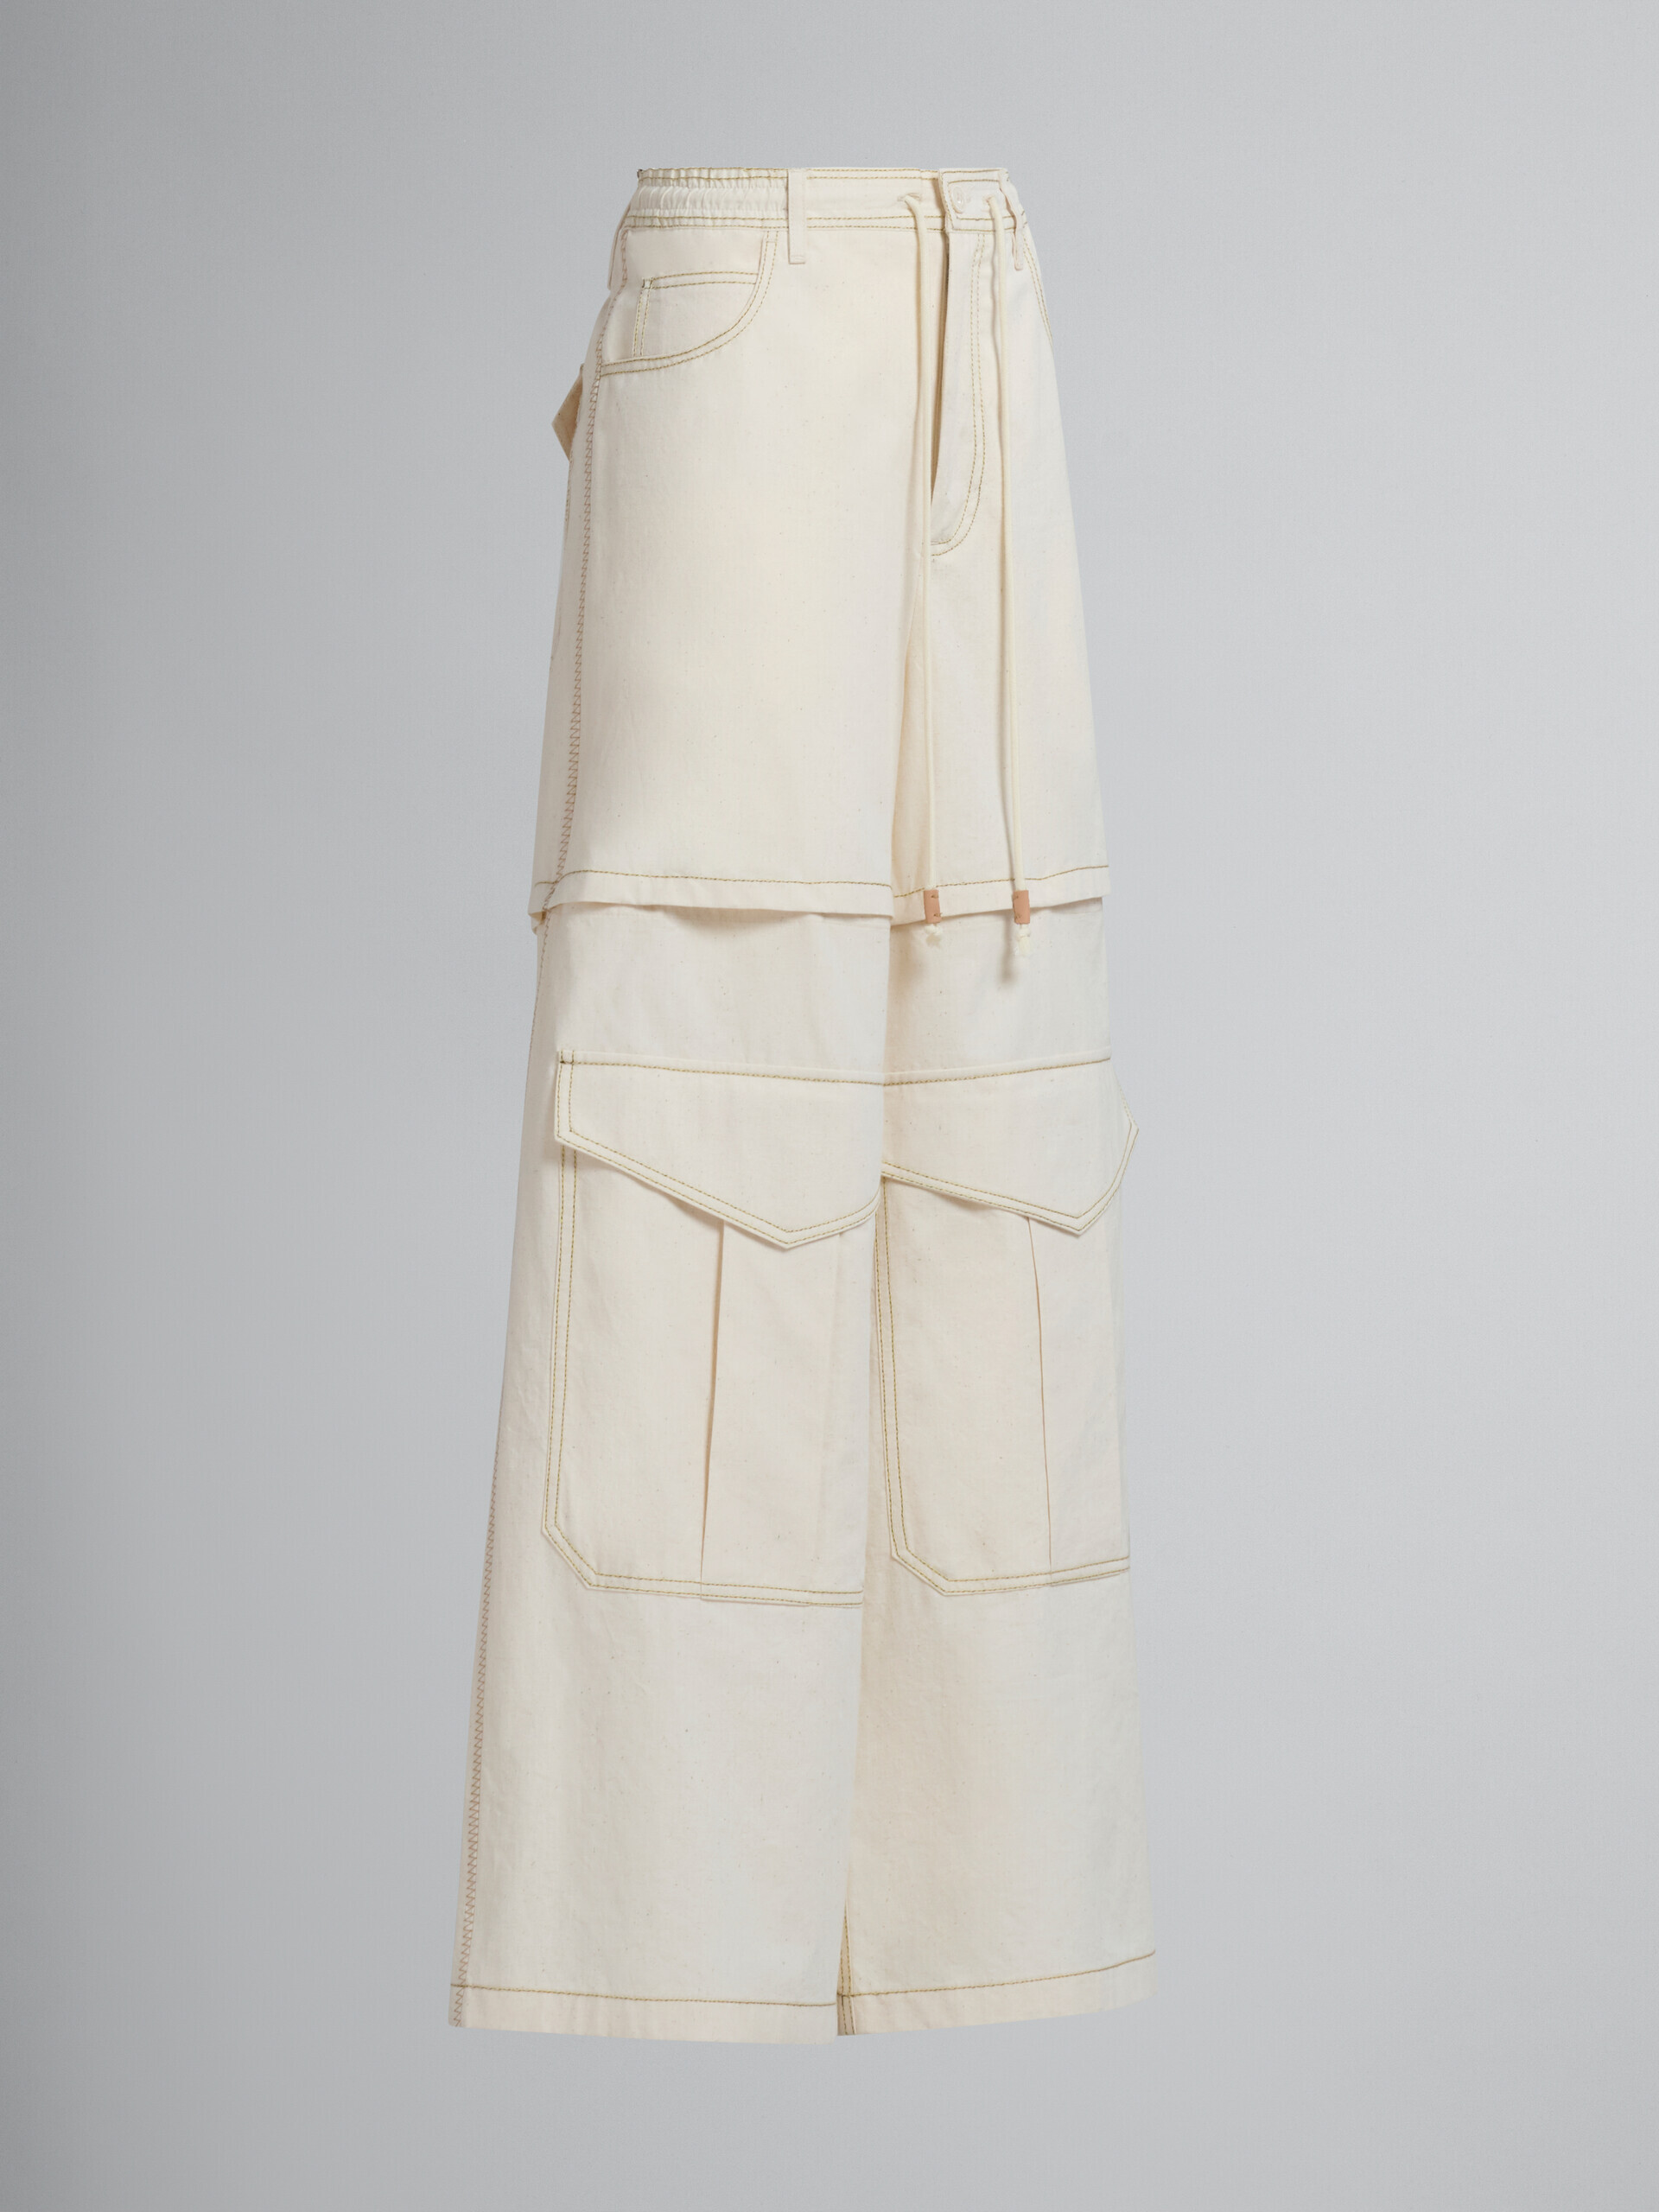 Pantaloni cargo in tela di cotone biologico beige chiaro con impunture Marni - Pantaloni - Image 2